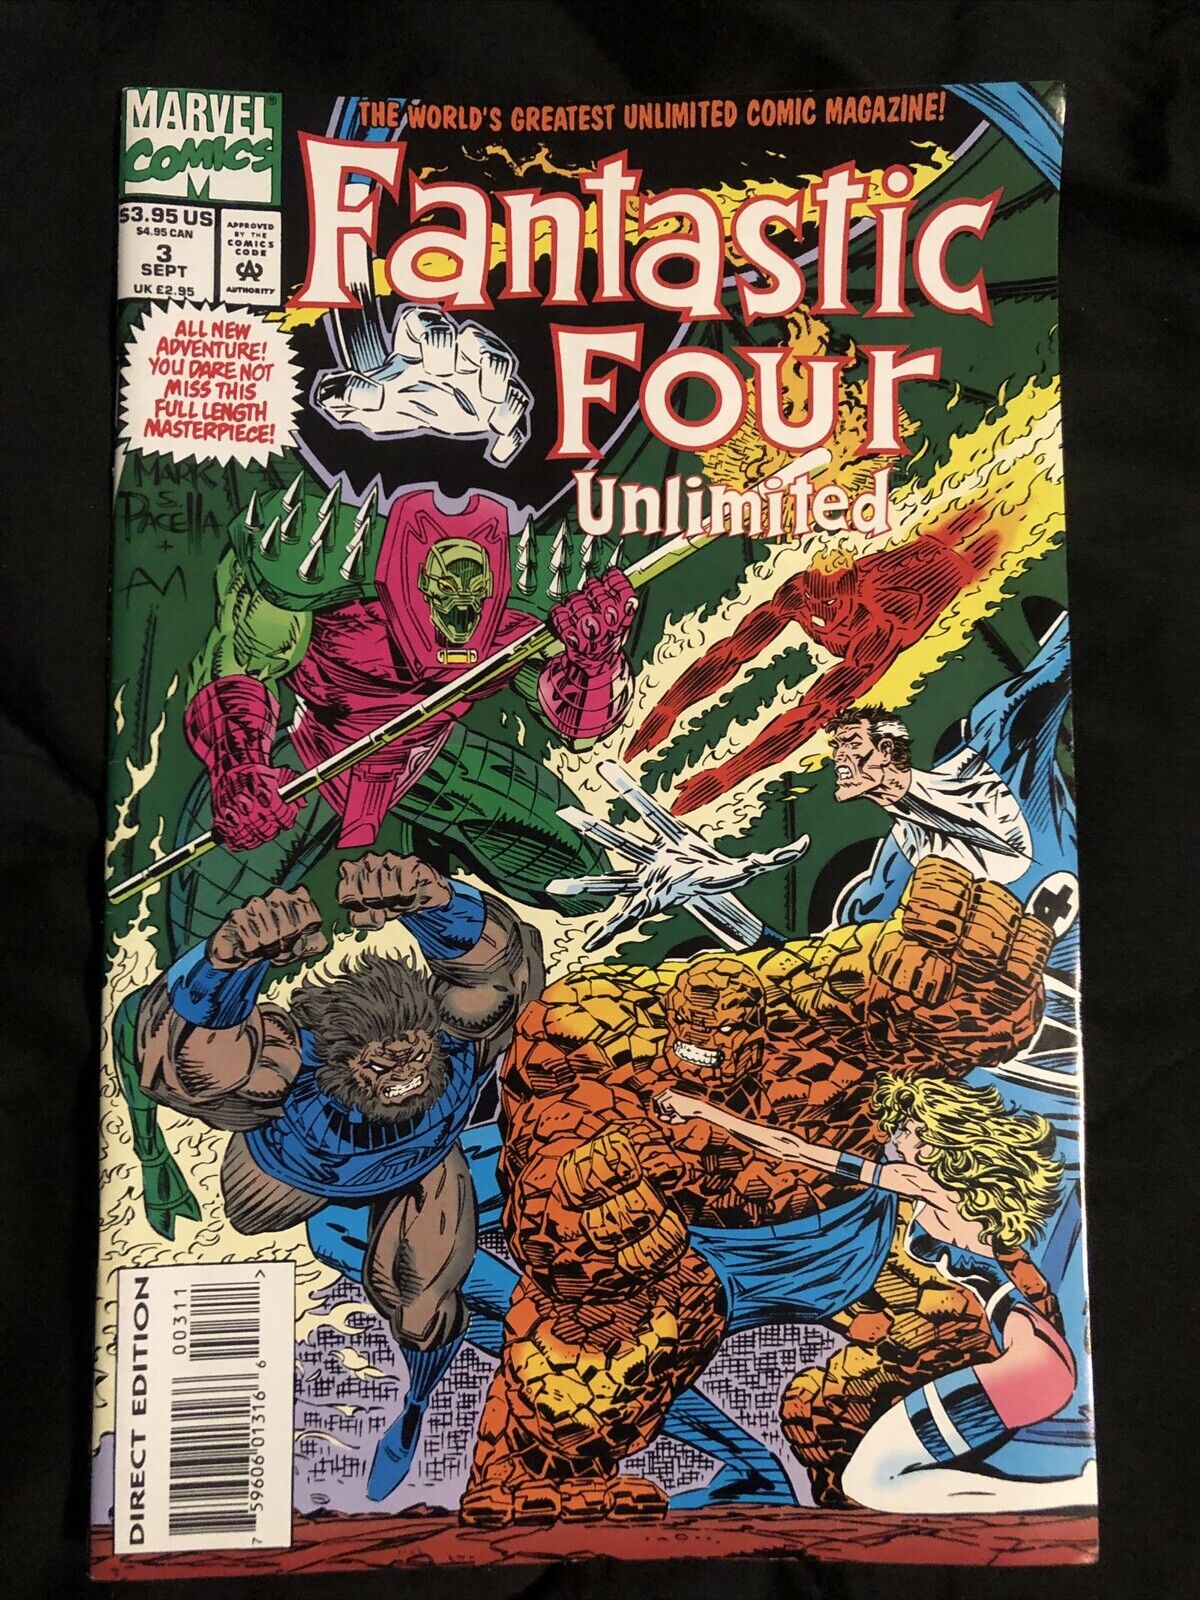 Fantastic Four Unlimited #3 (Marvel Comics September 1993)